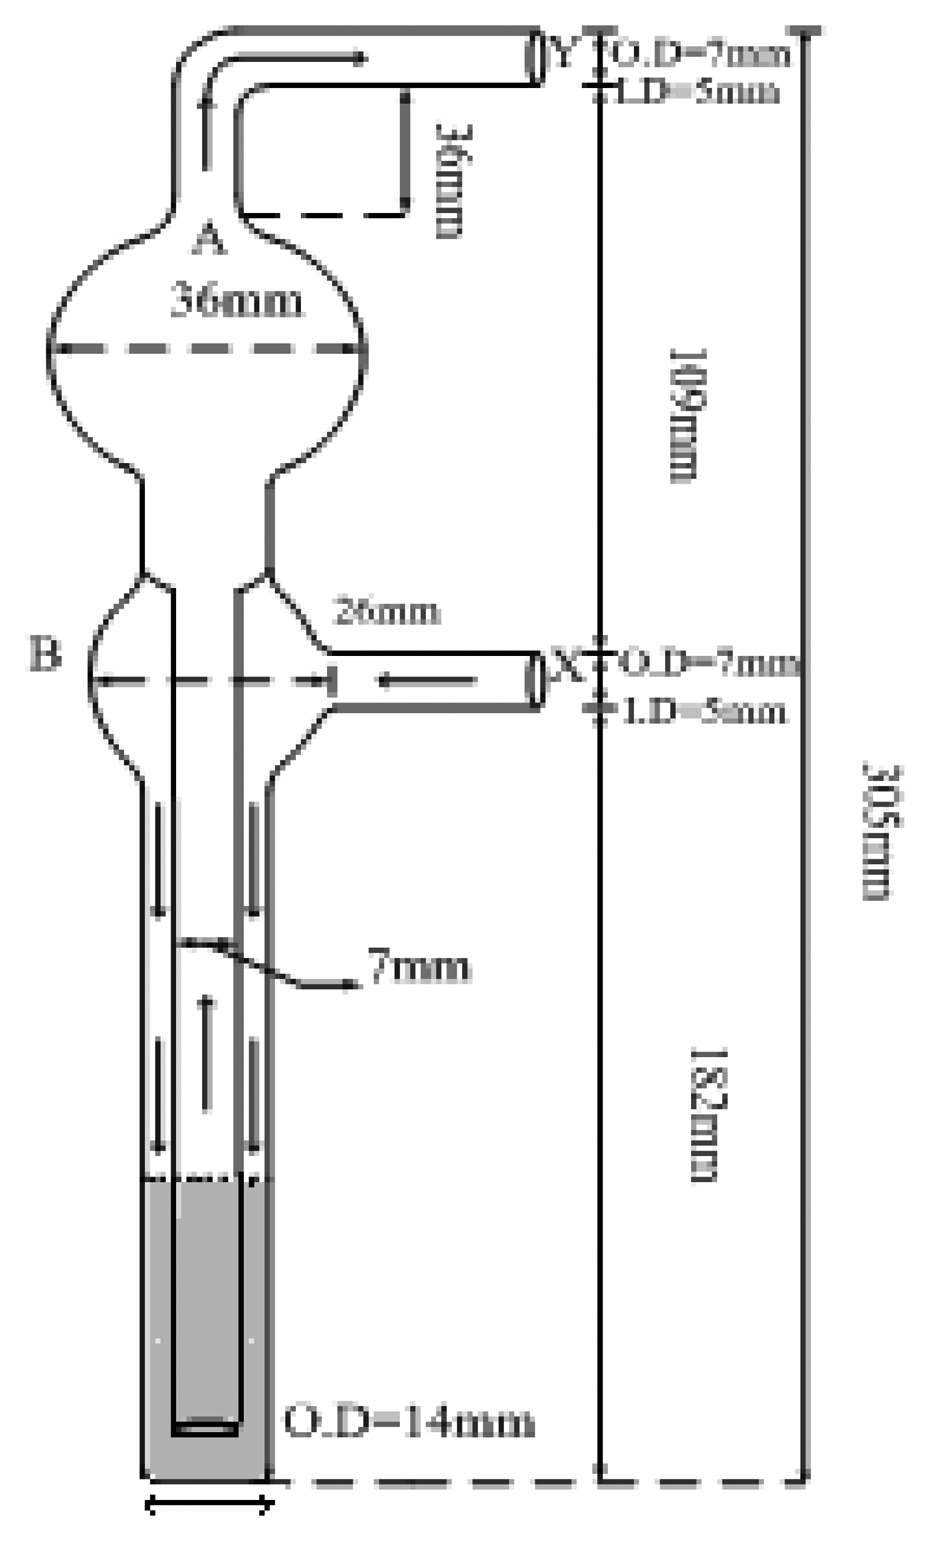 manometer diagram with label